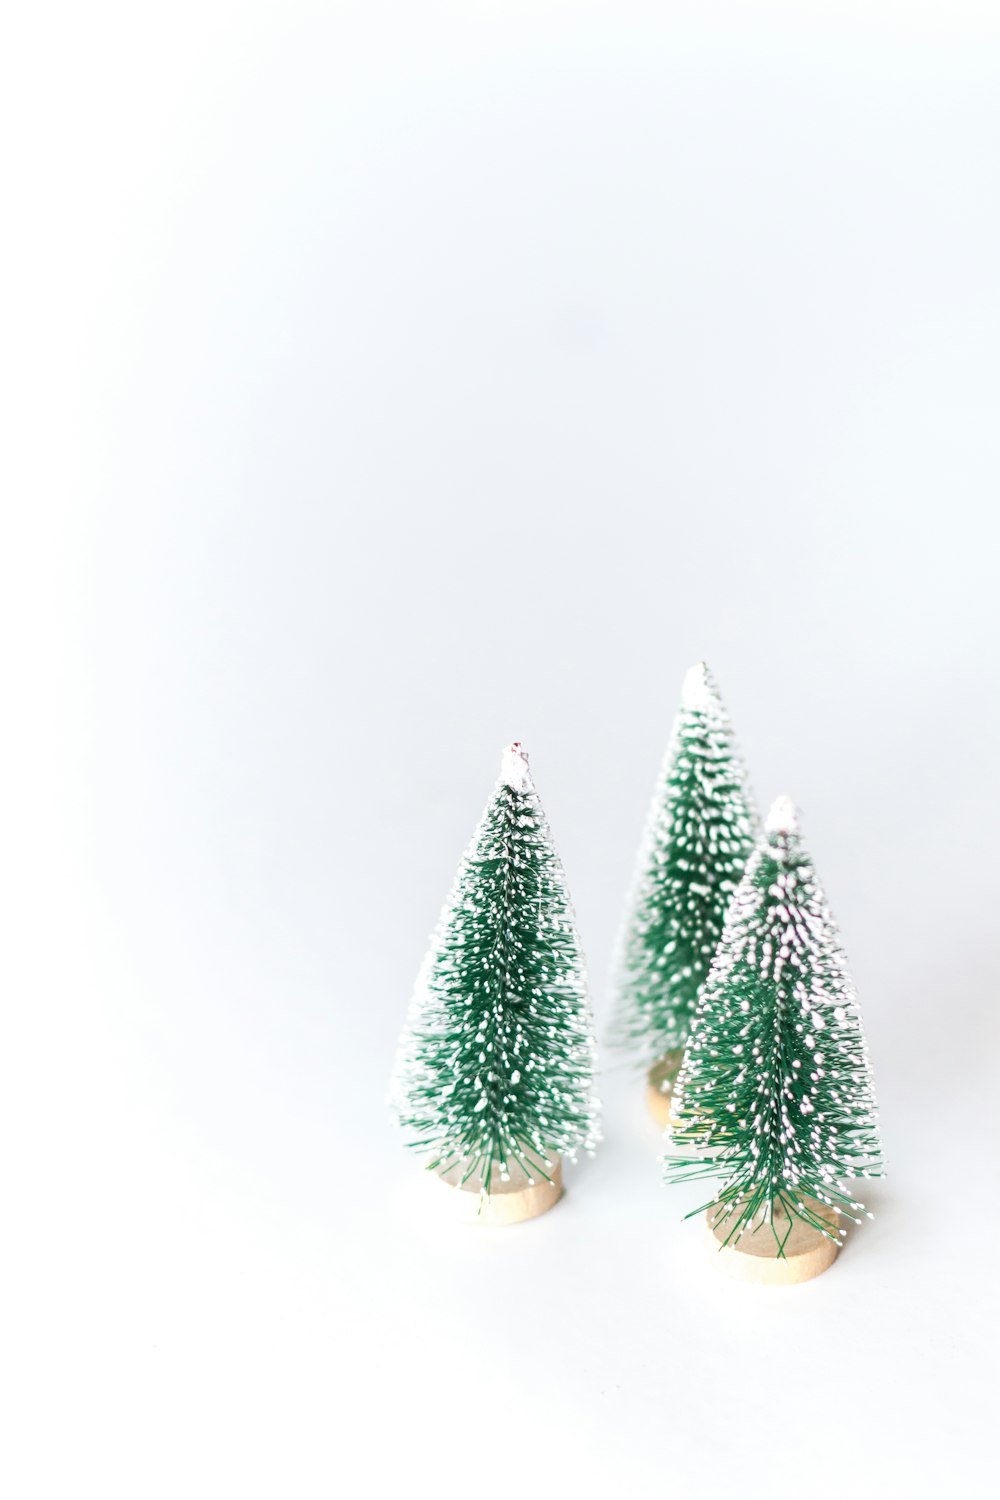 tres pequeños árboles verdes de Navidad